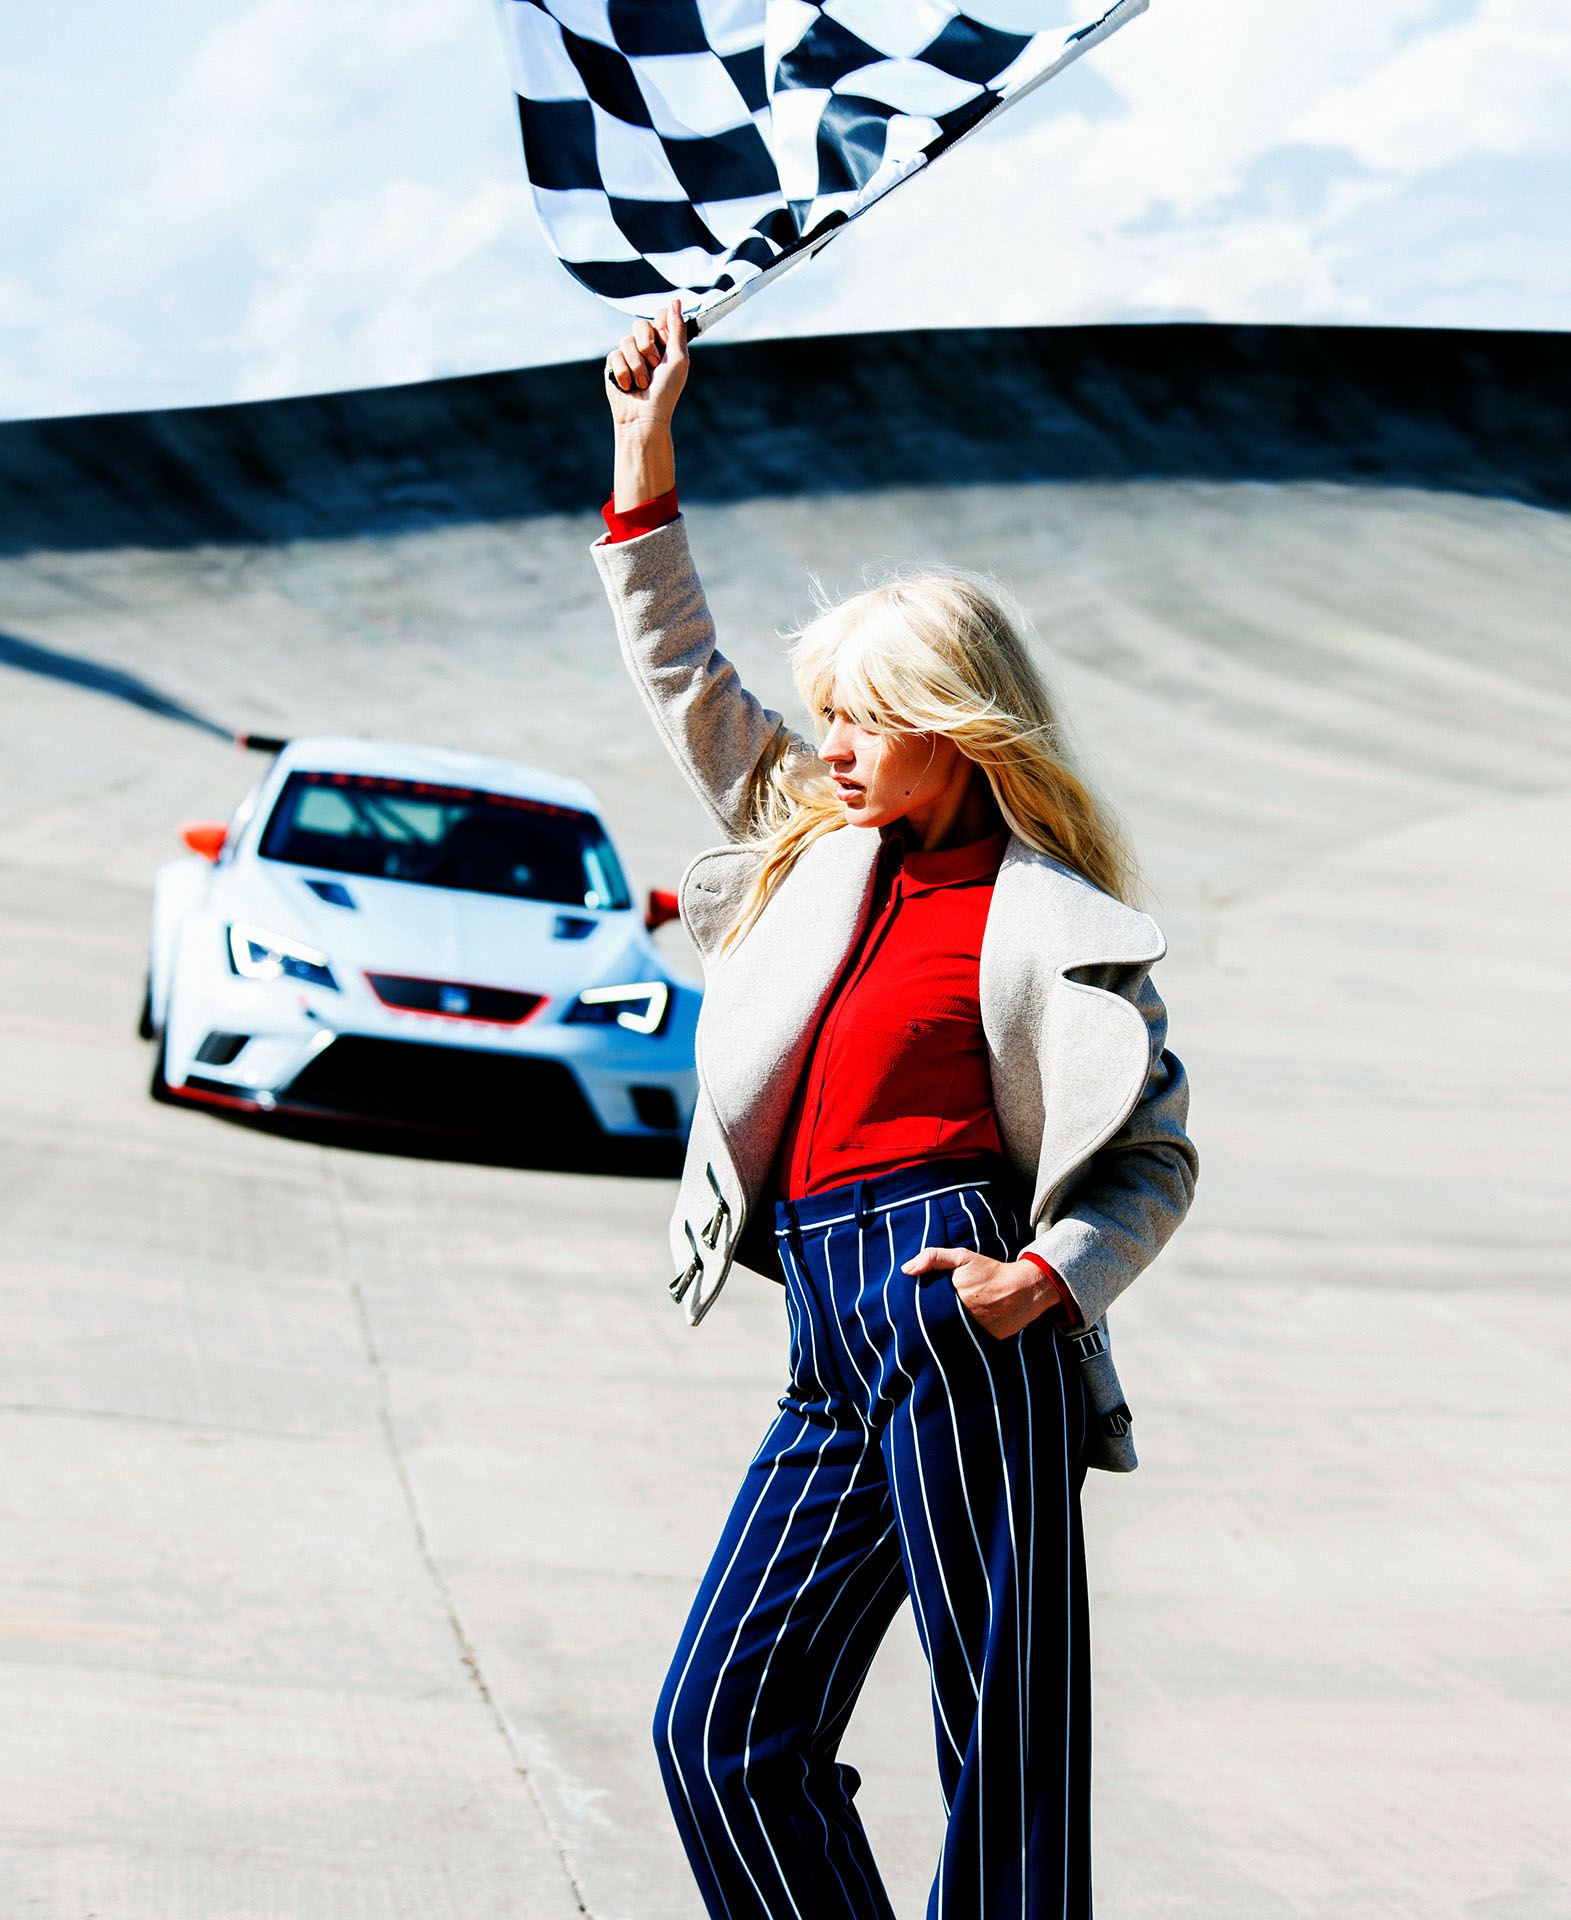 Autodromo - Shooting realizado por la fotógrafa Alicia Aguilera junto a Enri Mür Studio para la revista Cosmopolitan.